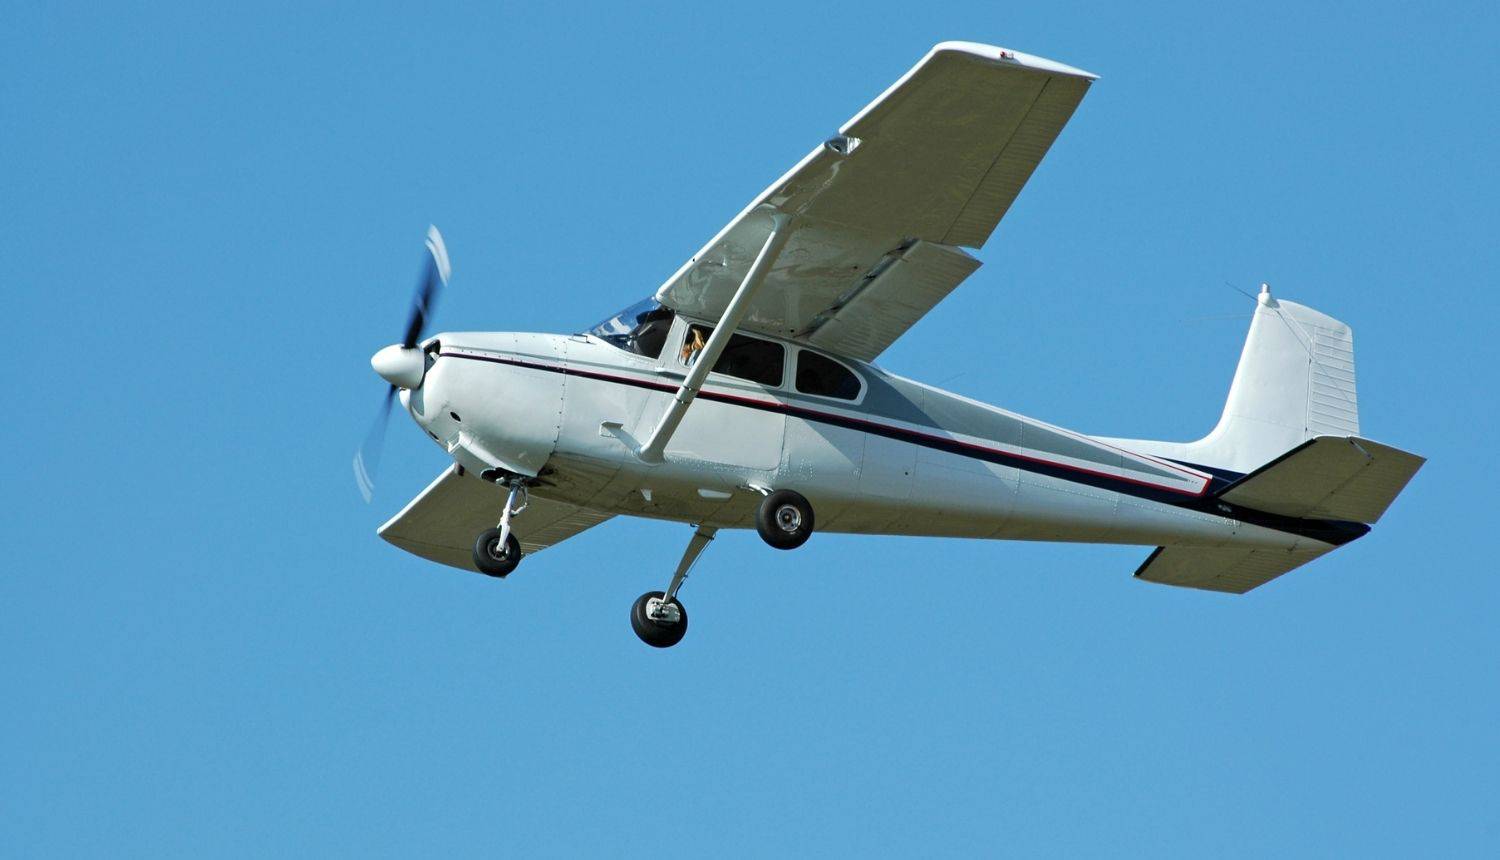 Cessna koja je danas nestala proizvodi se u Americi, a model datira još iz 1956. godine